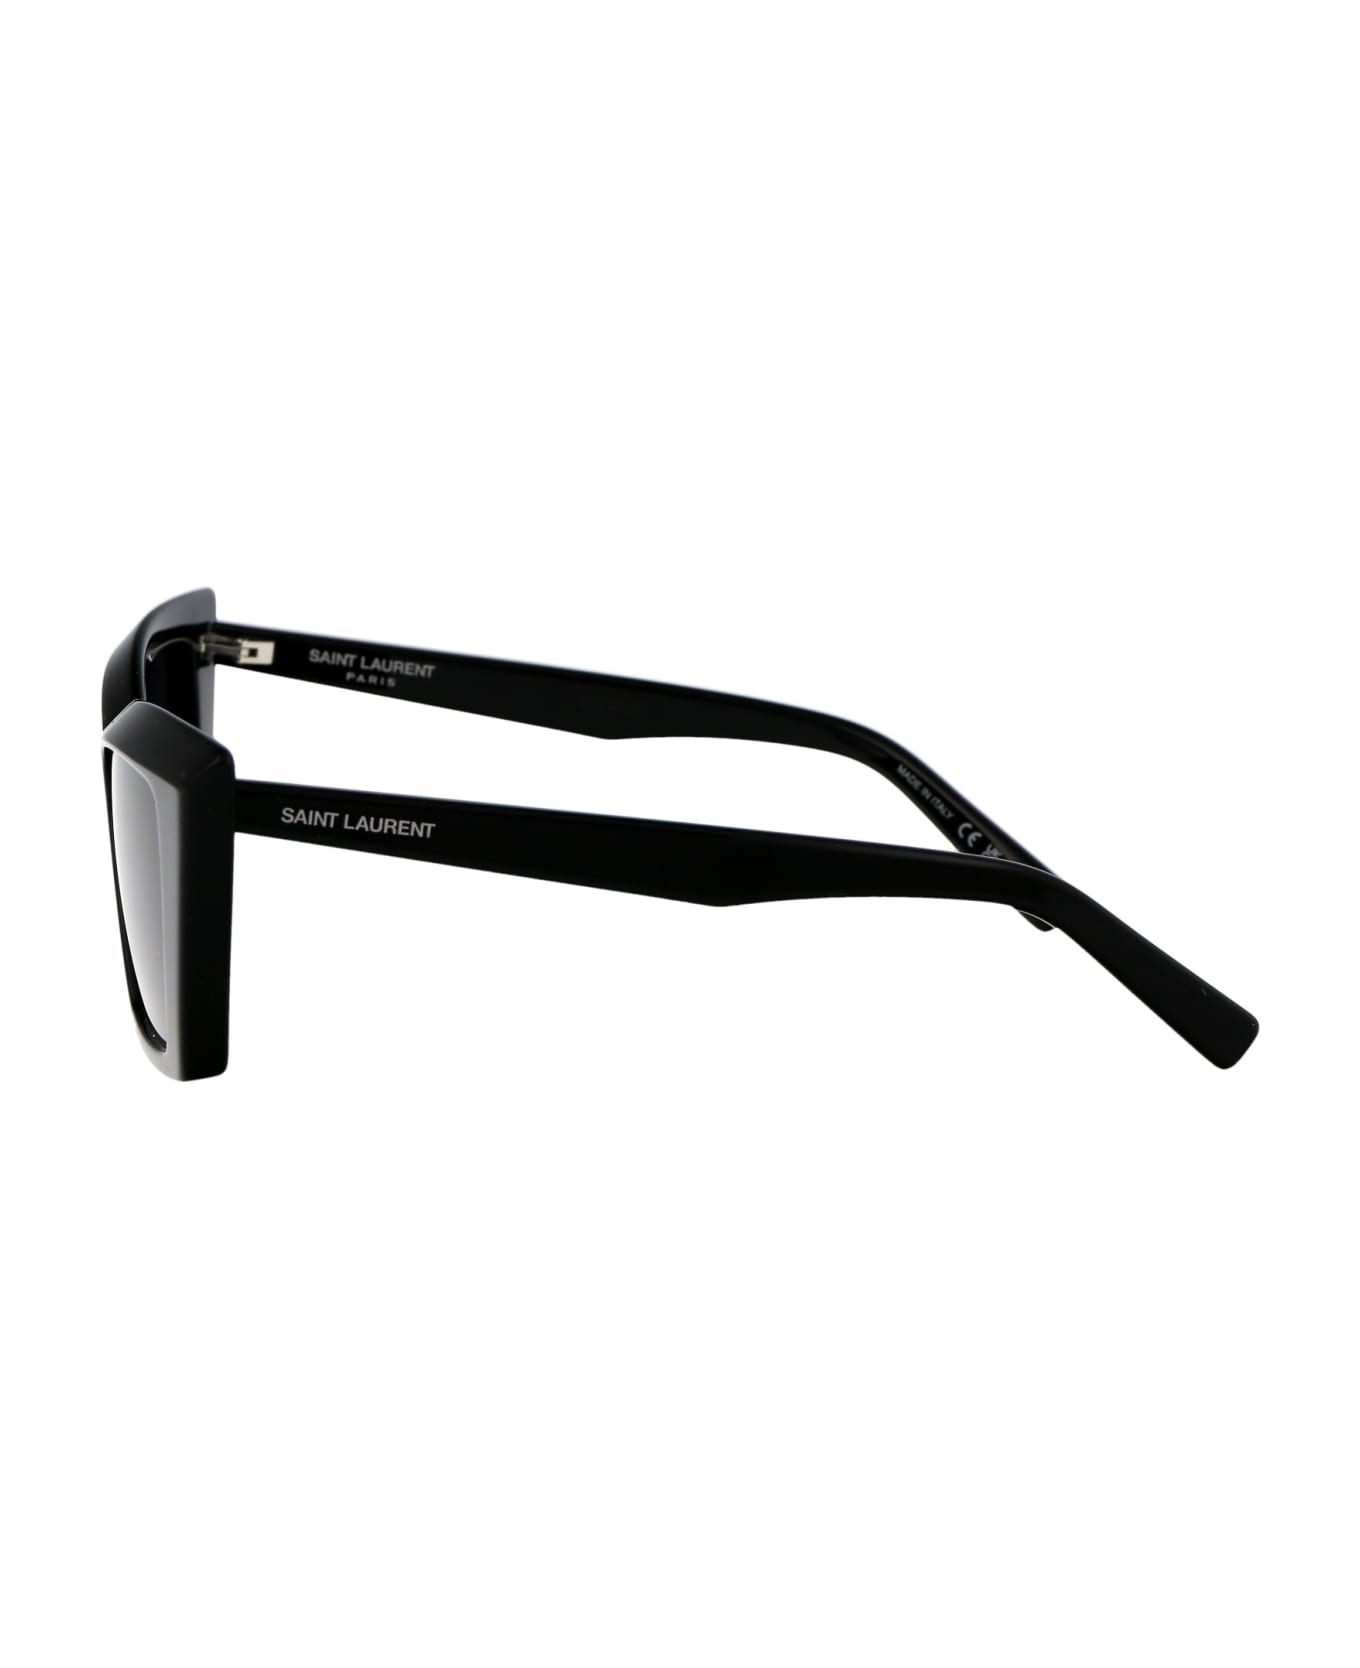 Saint Laurent Eyewear Sl 657 Sunglasses - 001 BLACK BLACK BLACK